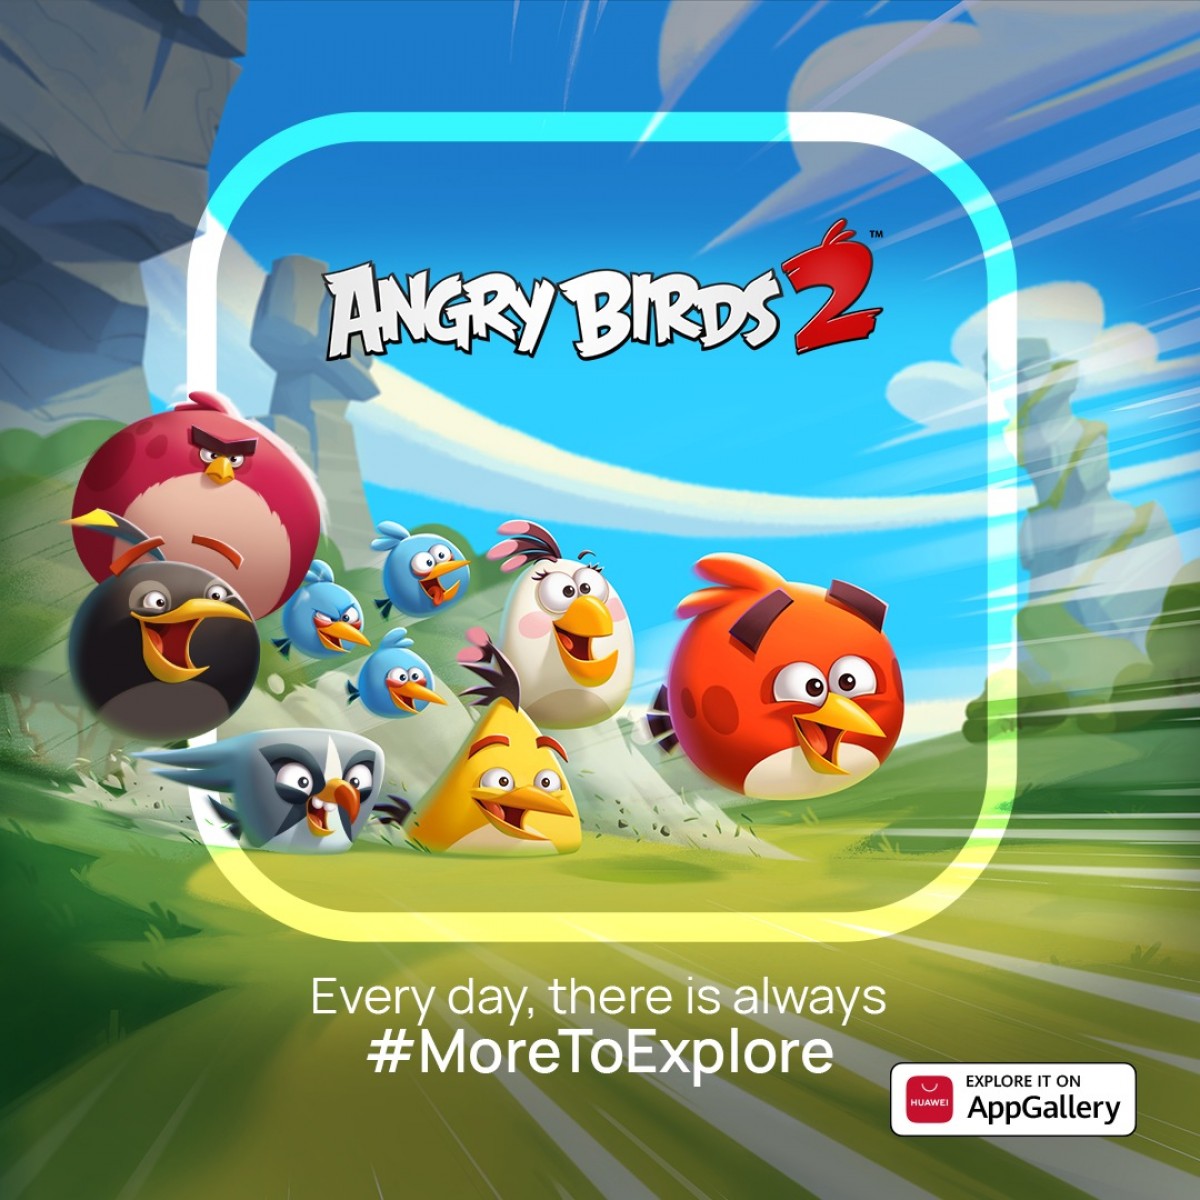 Huawei y Rovio llevan Angry Birds 2 a AppGallery